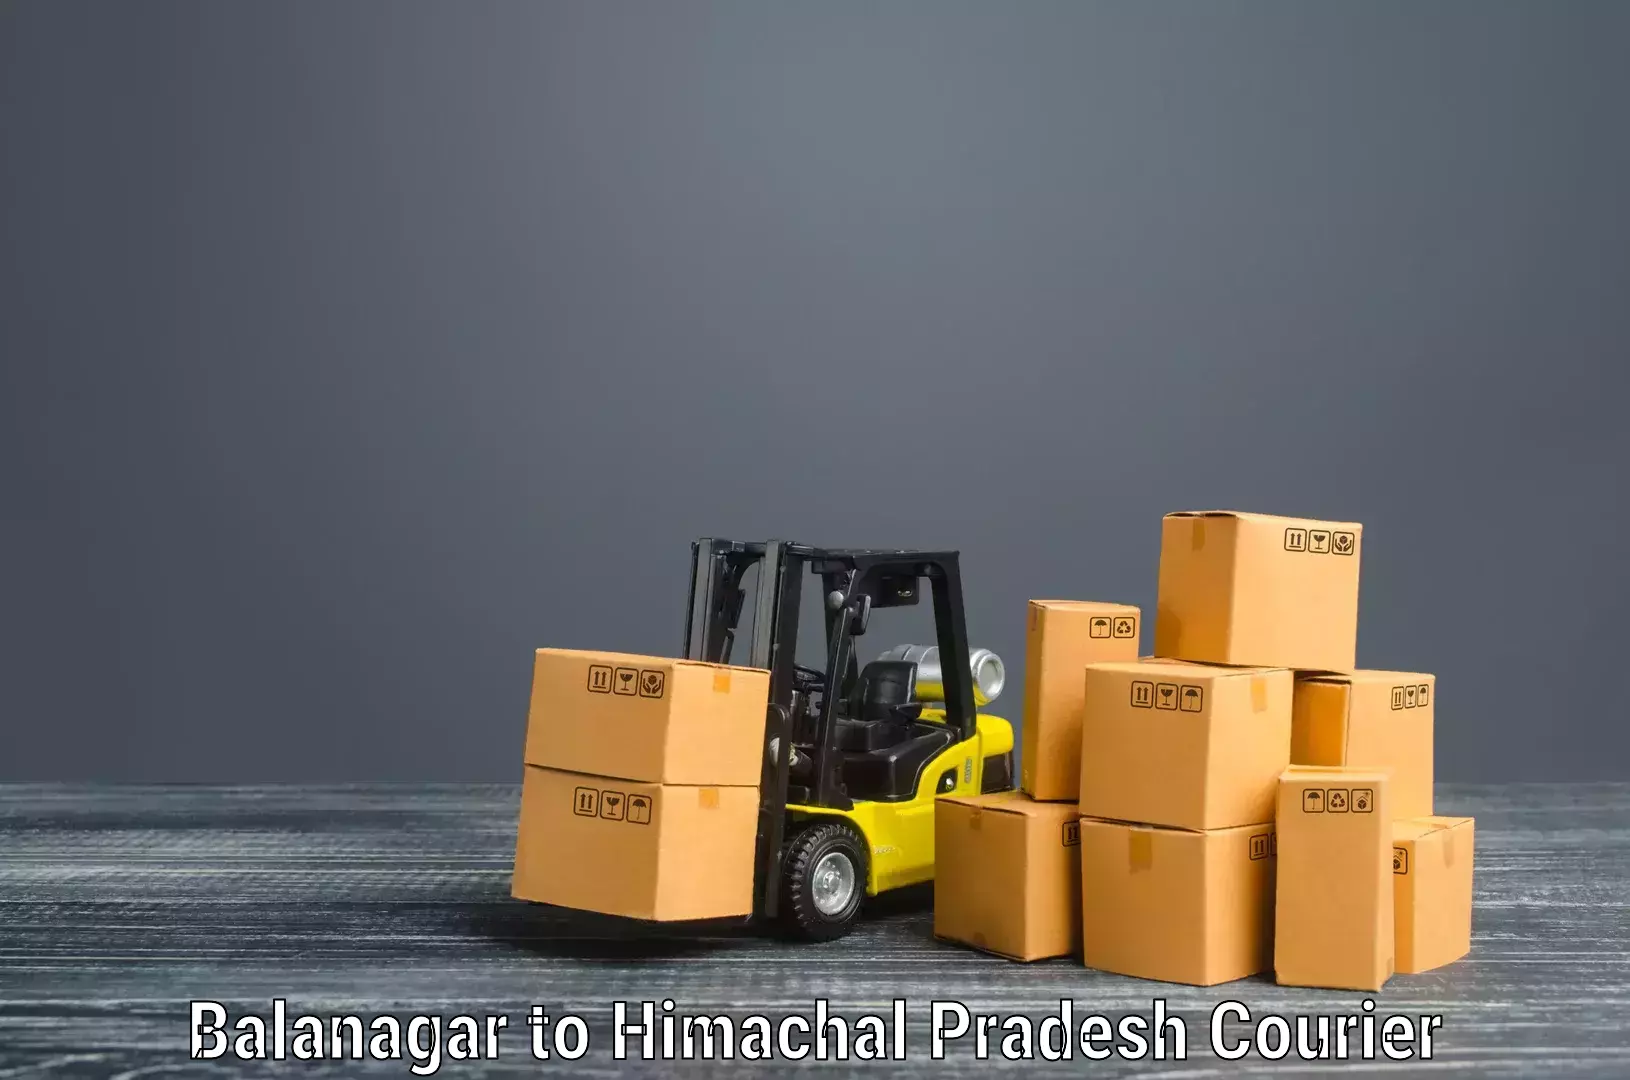 Furniture moving experts Balanagar to Jubbal